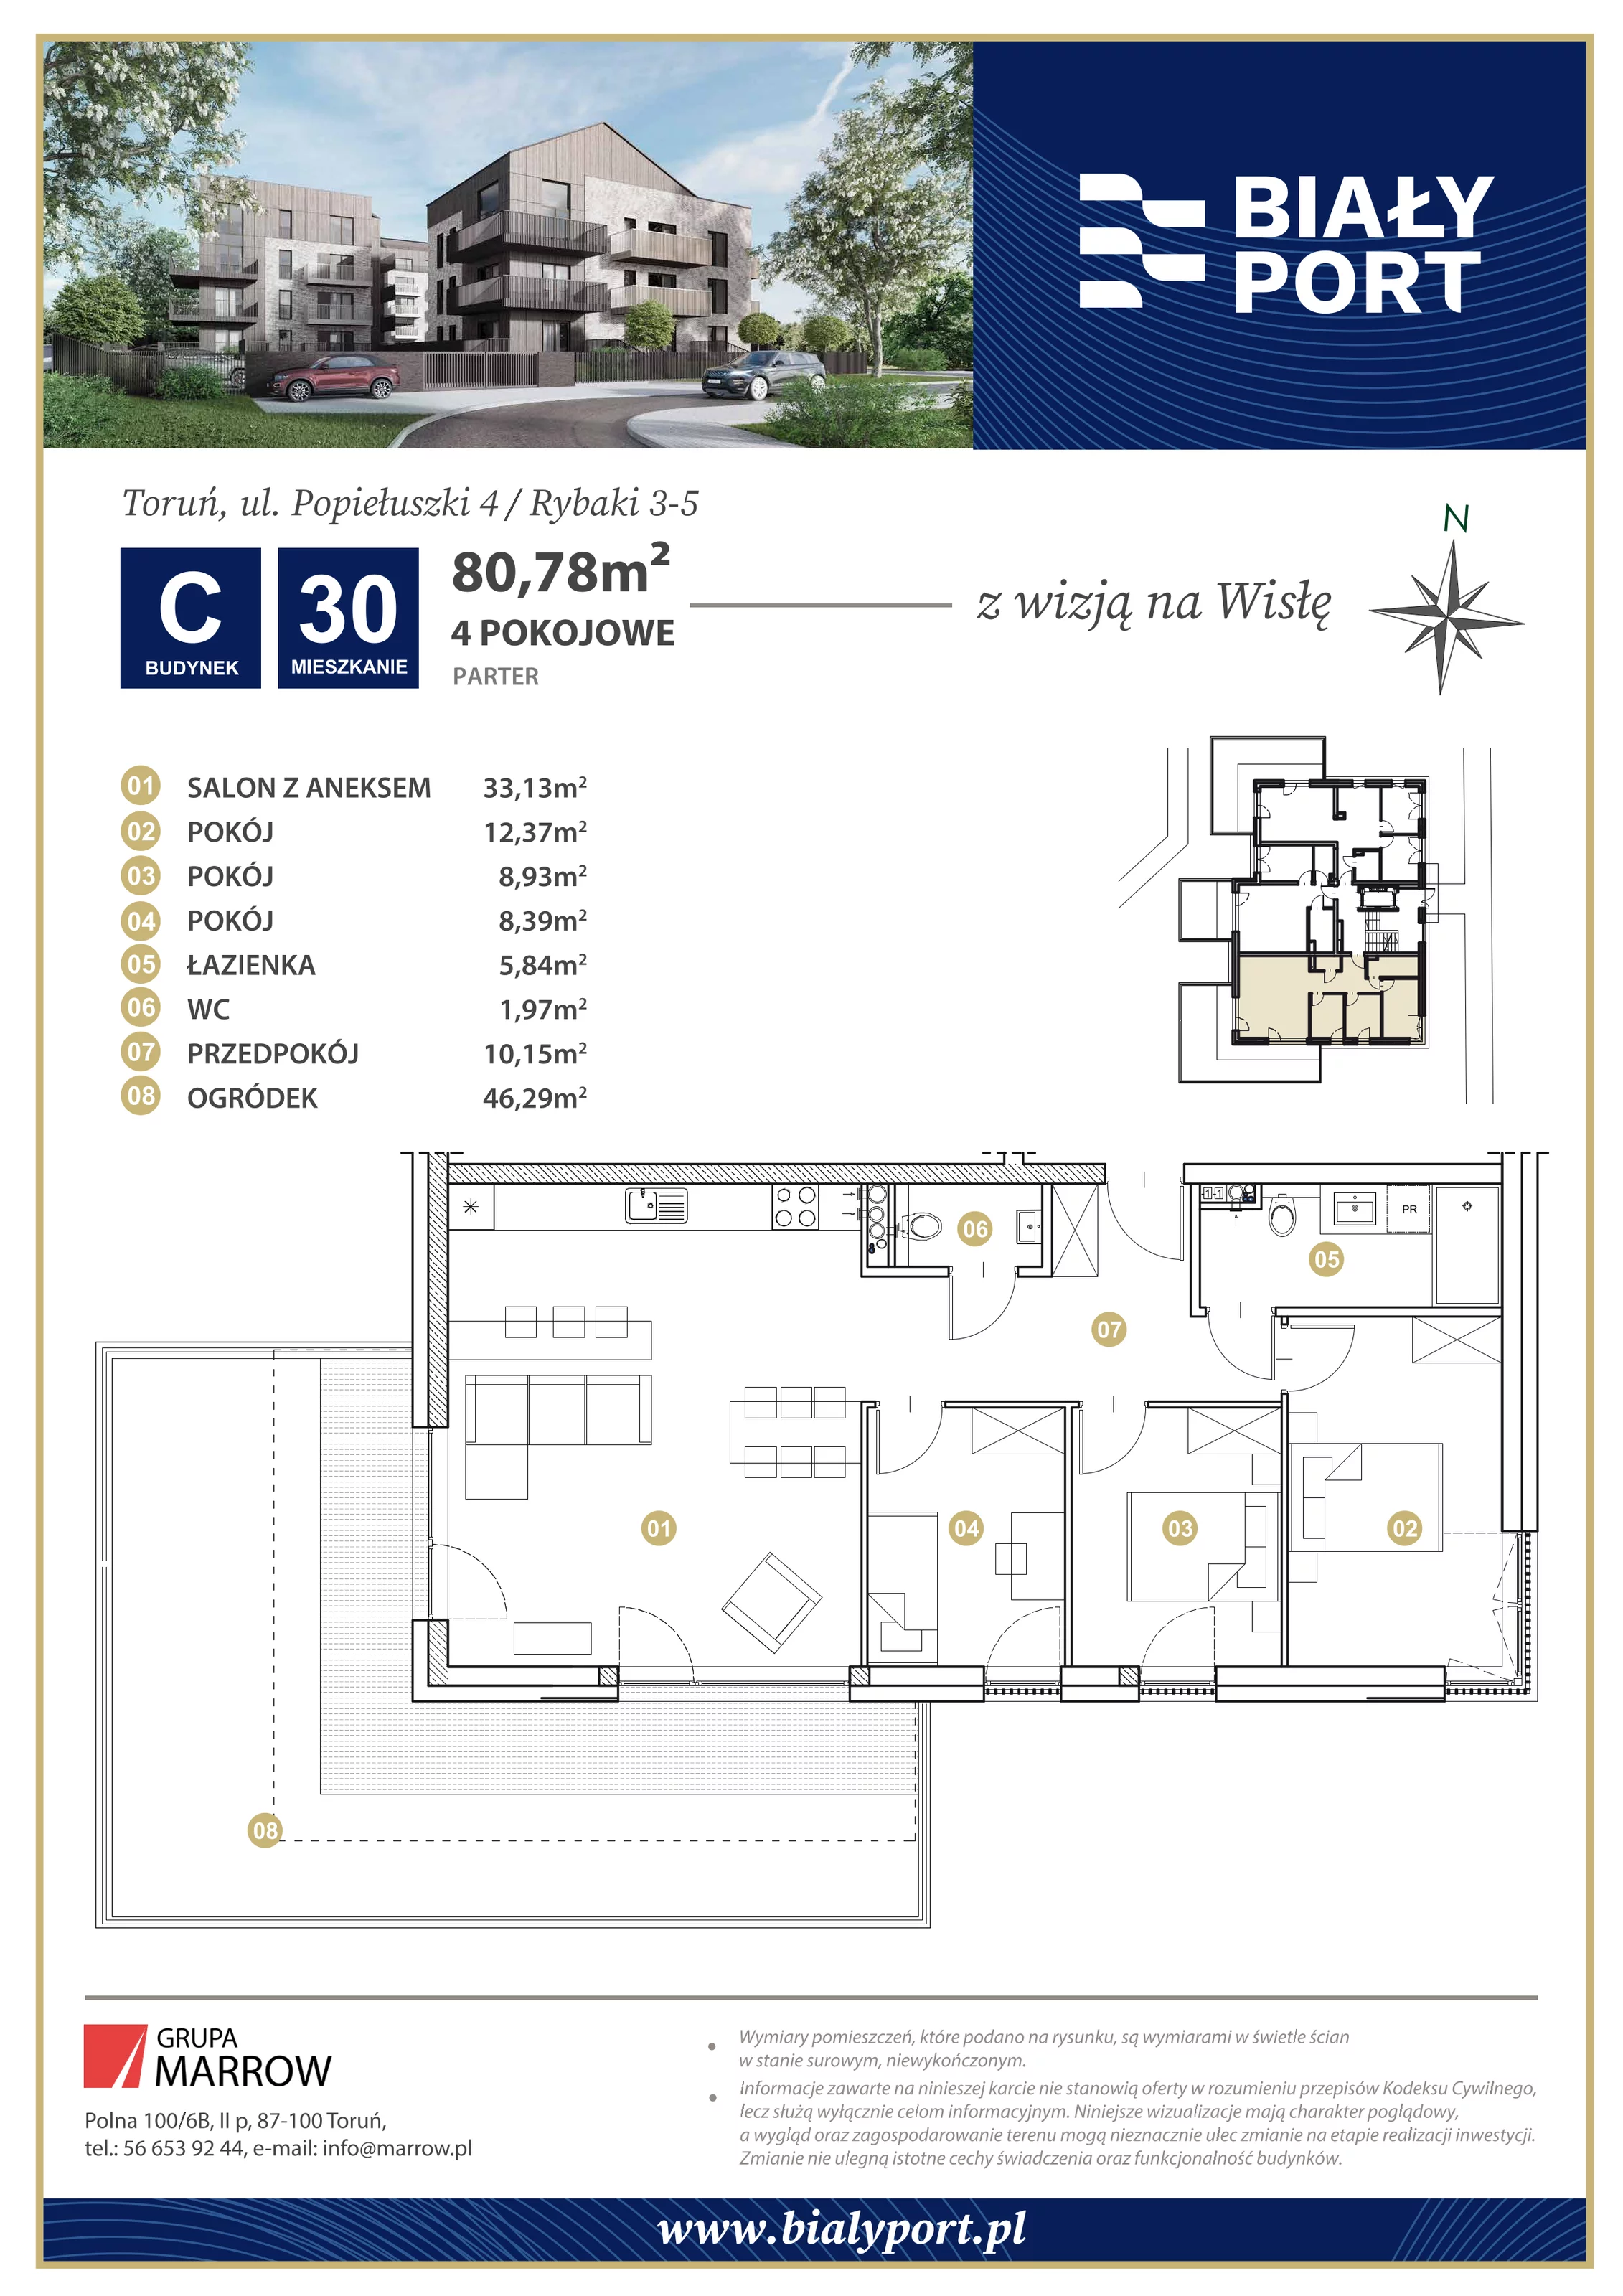 Mieszkanie 80,78 m², parter, oferta nr 30, Biały Port, Toruń, Rybaki, ul. Popiełuszki 4